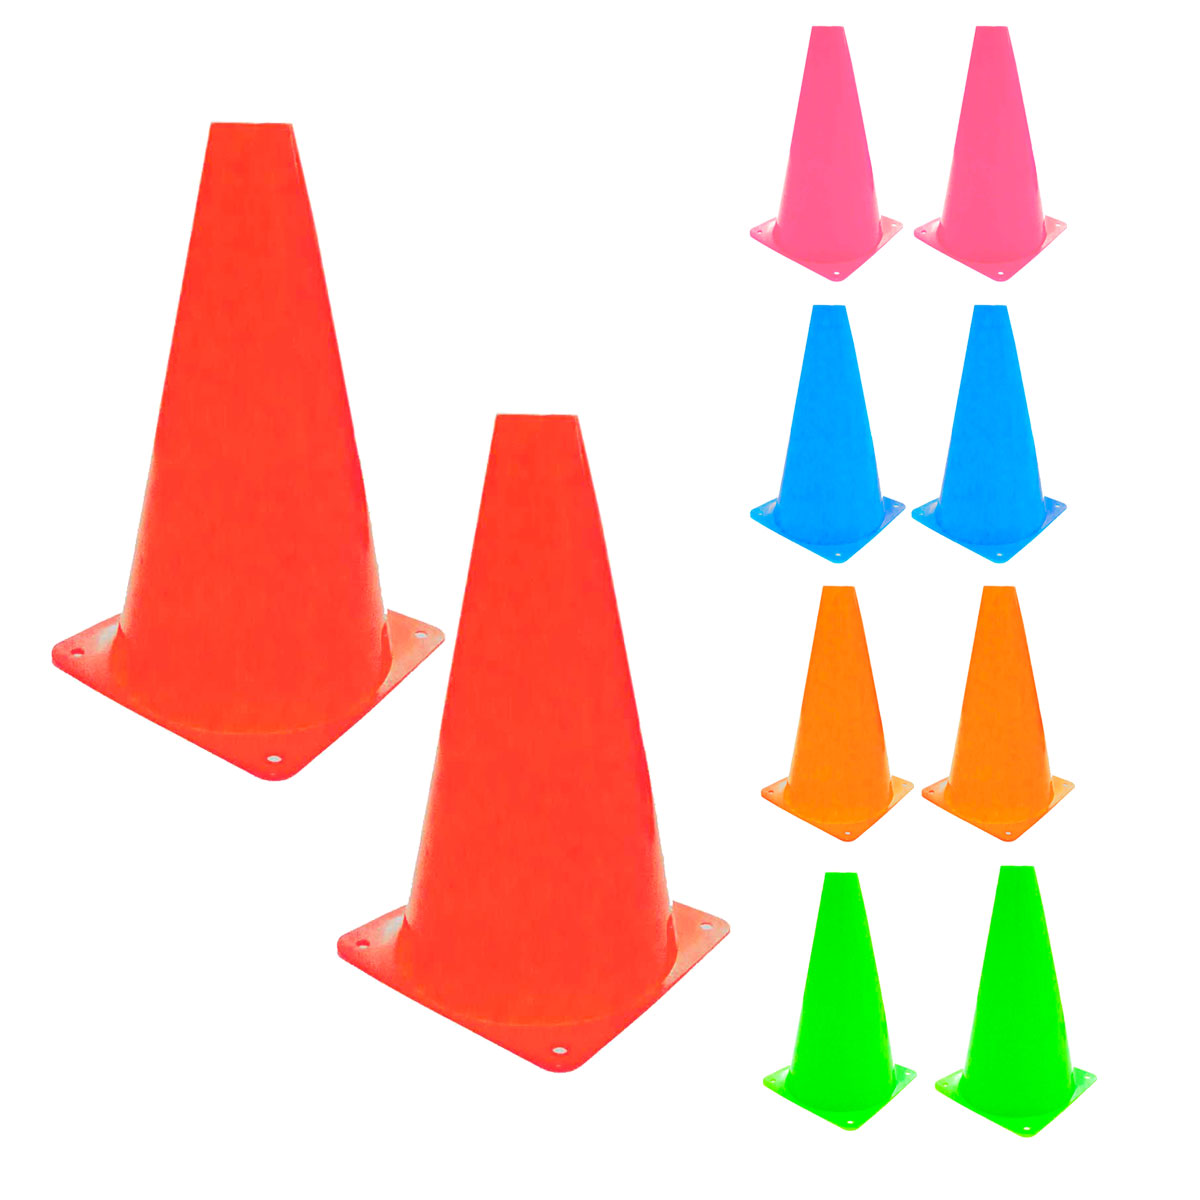 Kit Treino Funcional 1 Escada + 10 cones coloridos + 1 Corda de Pular + 1 Kit Mini band + 1 Barreira